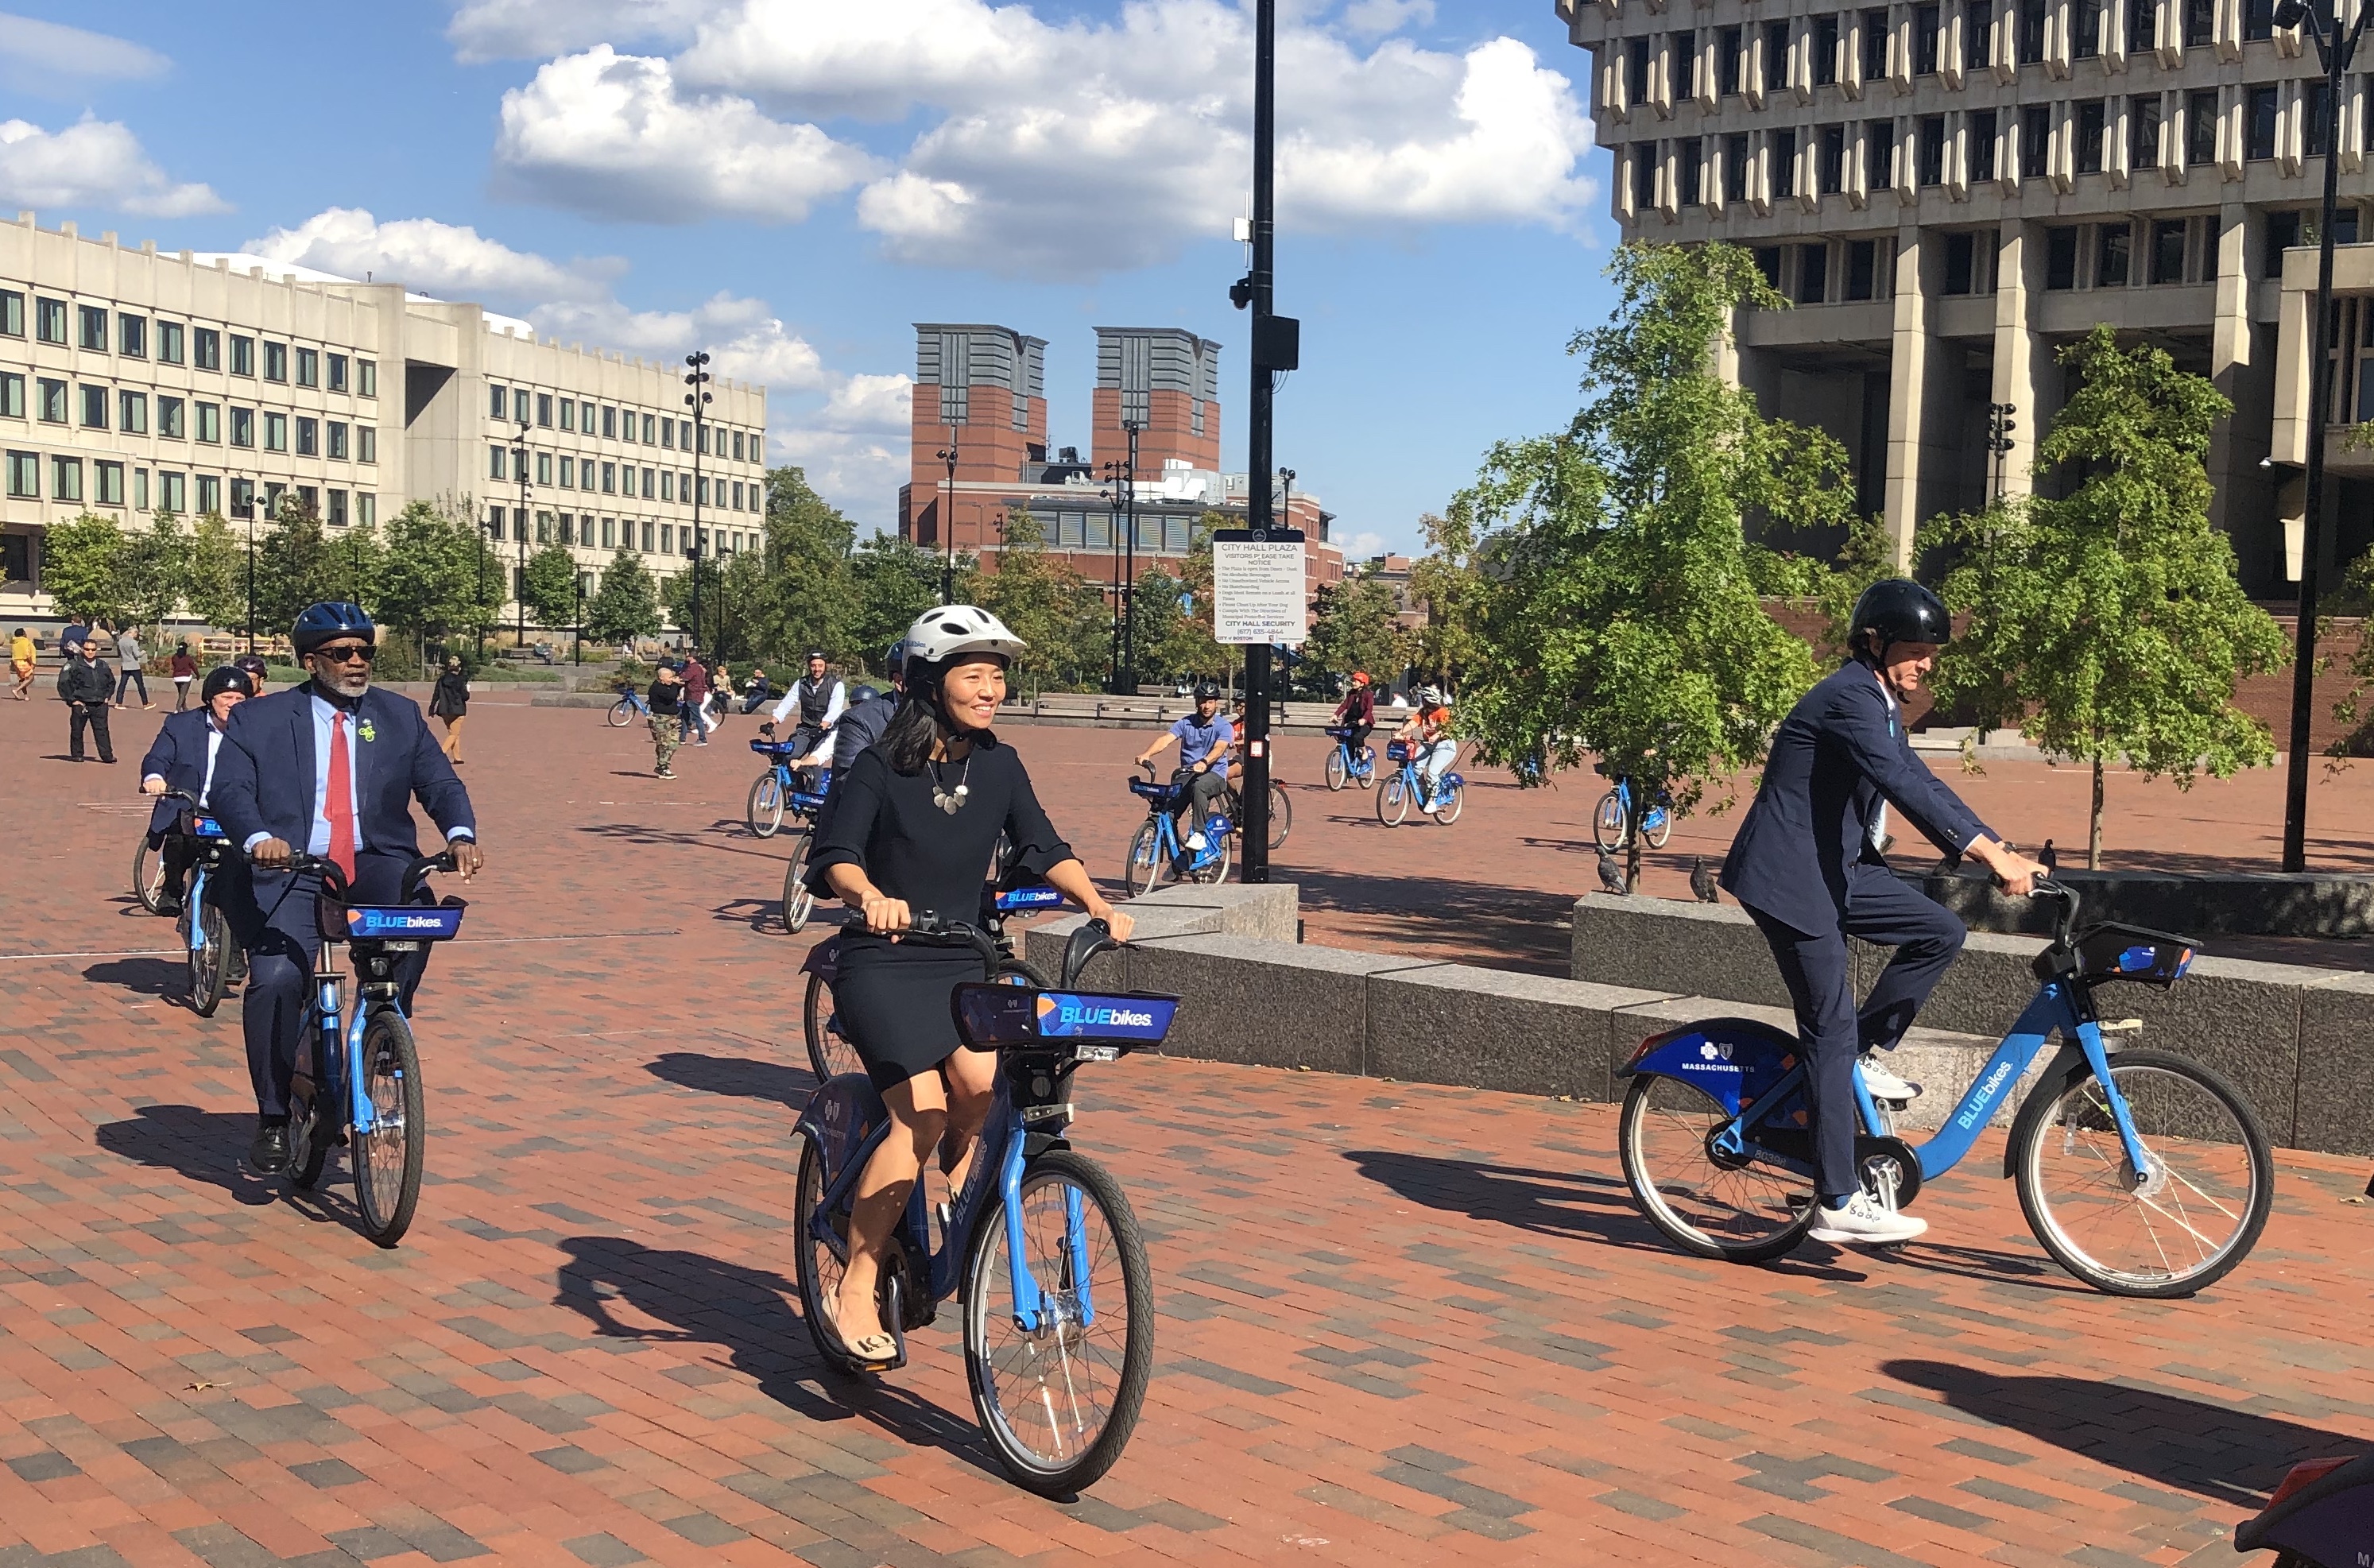 市长吴宣布波士顿居民可享受折扣自行车共享卡 - 马萨诸塞州Streetsblog